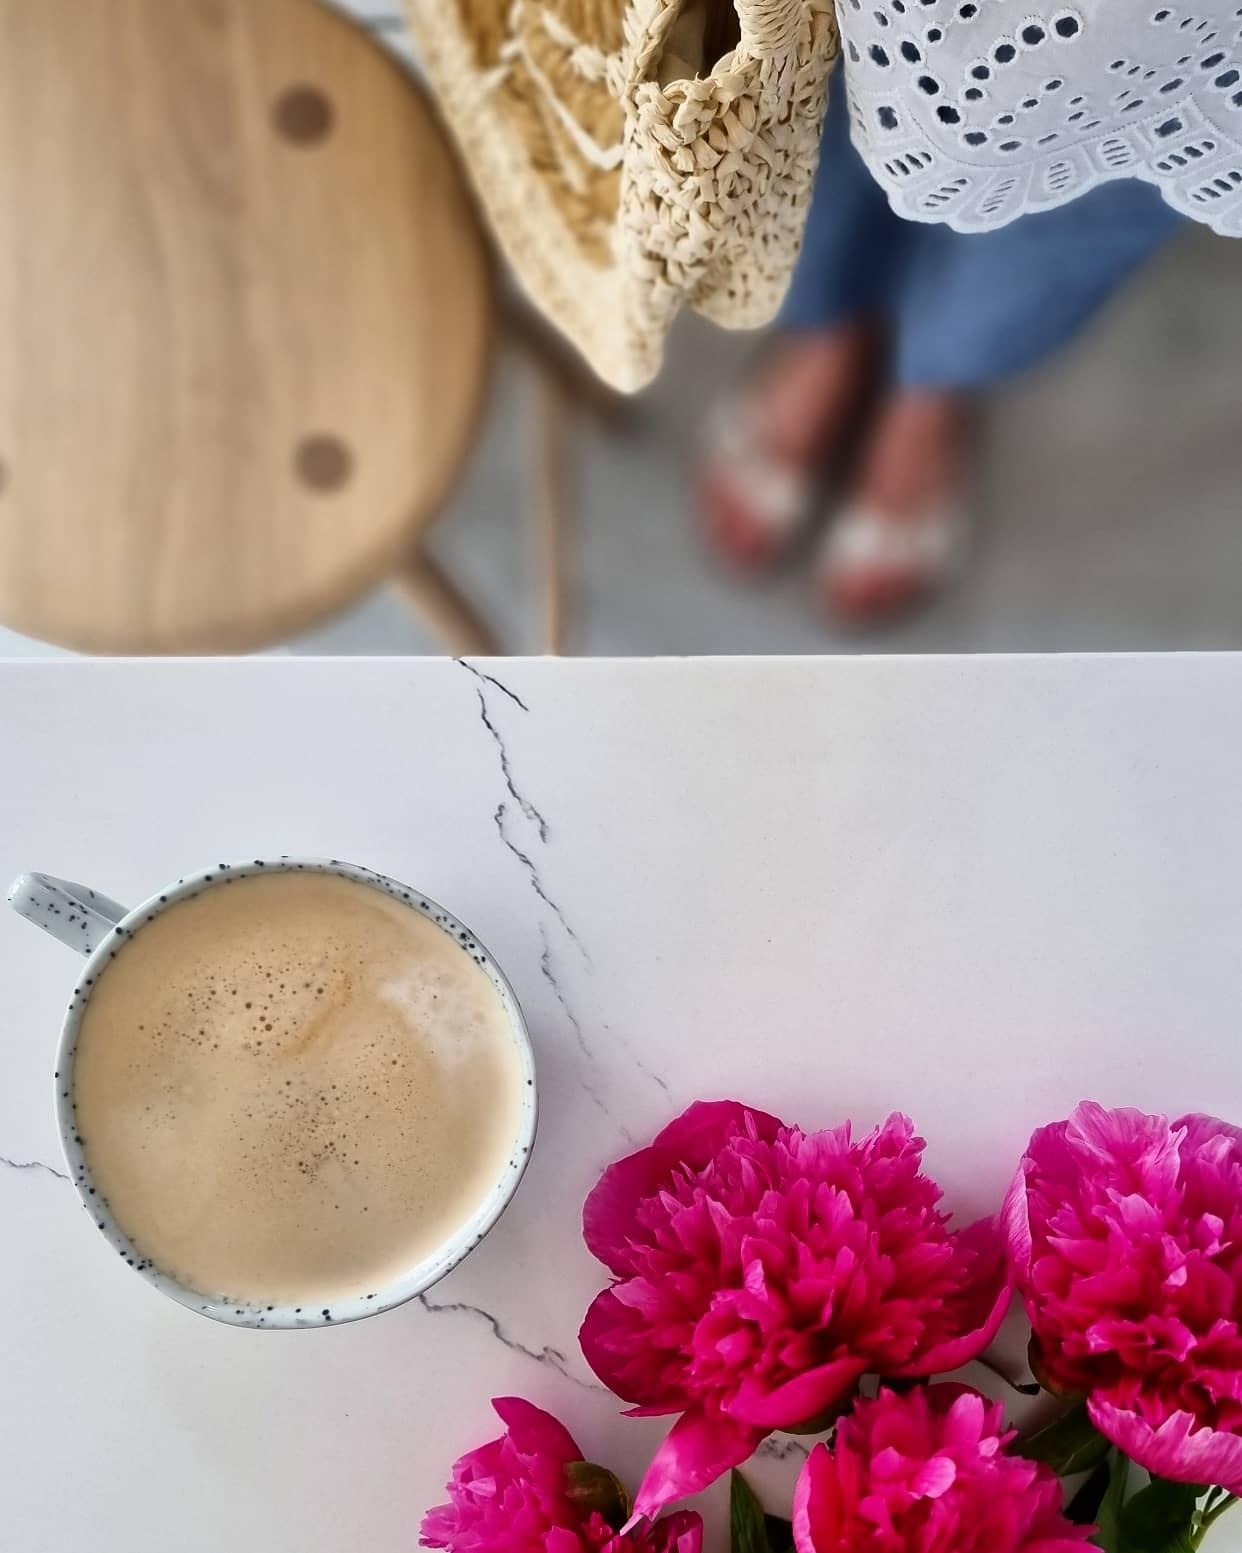 #pfingstrosen #kaffee #couchliebt #blumen #pink #kaffeliebe 
Einen sonnigen Tag wünsch ich euch!